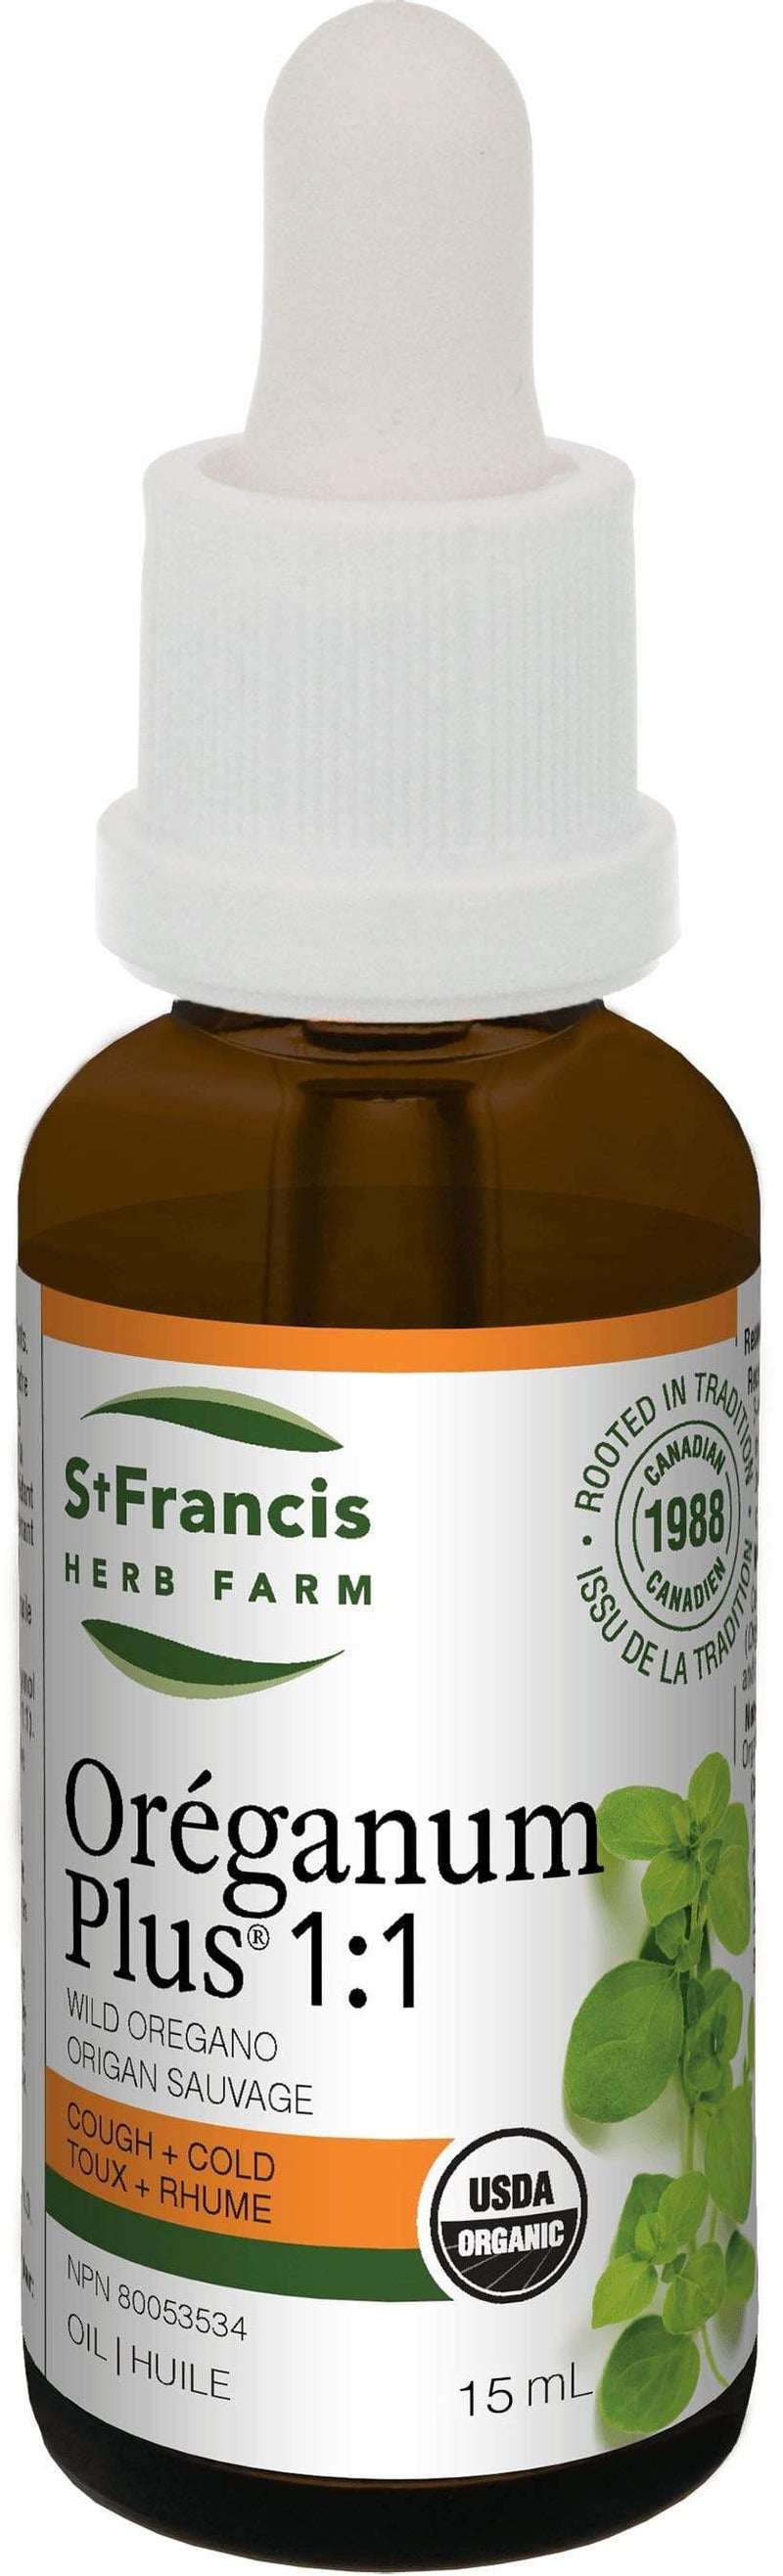 St Francis Herb Farm Oreganum Plus 1:3 15 ml